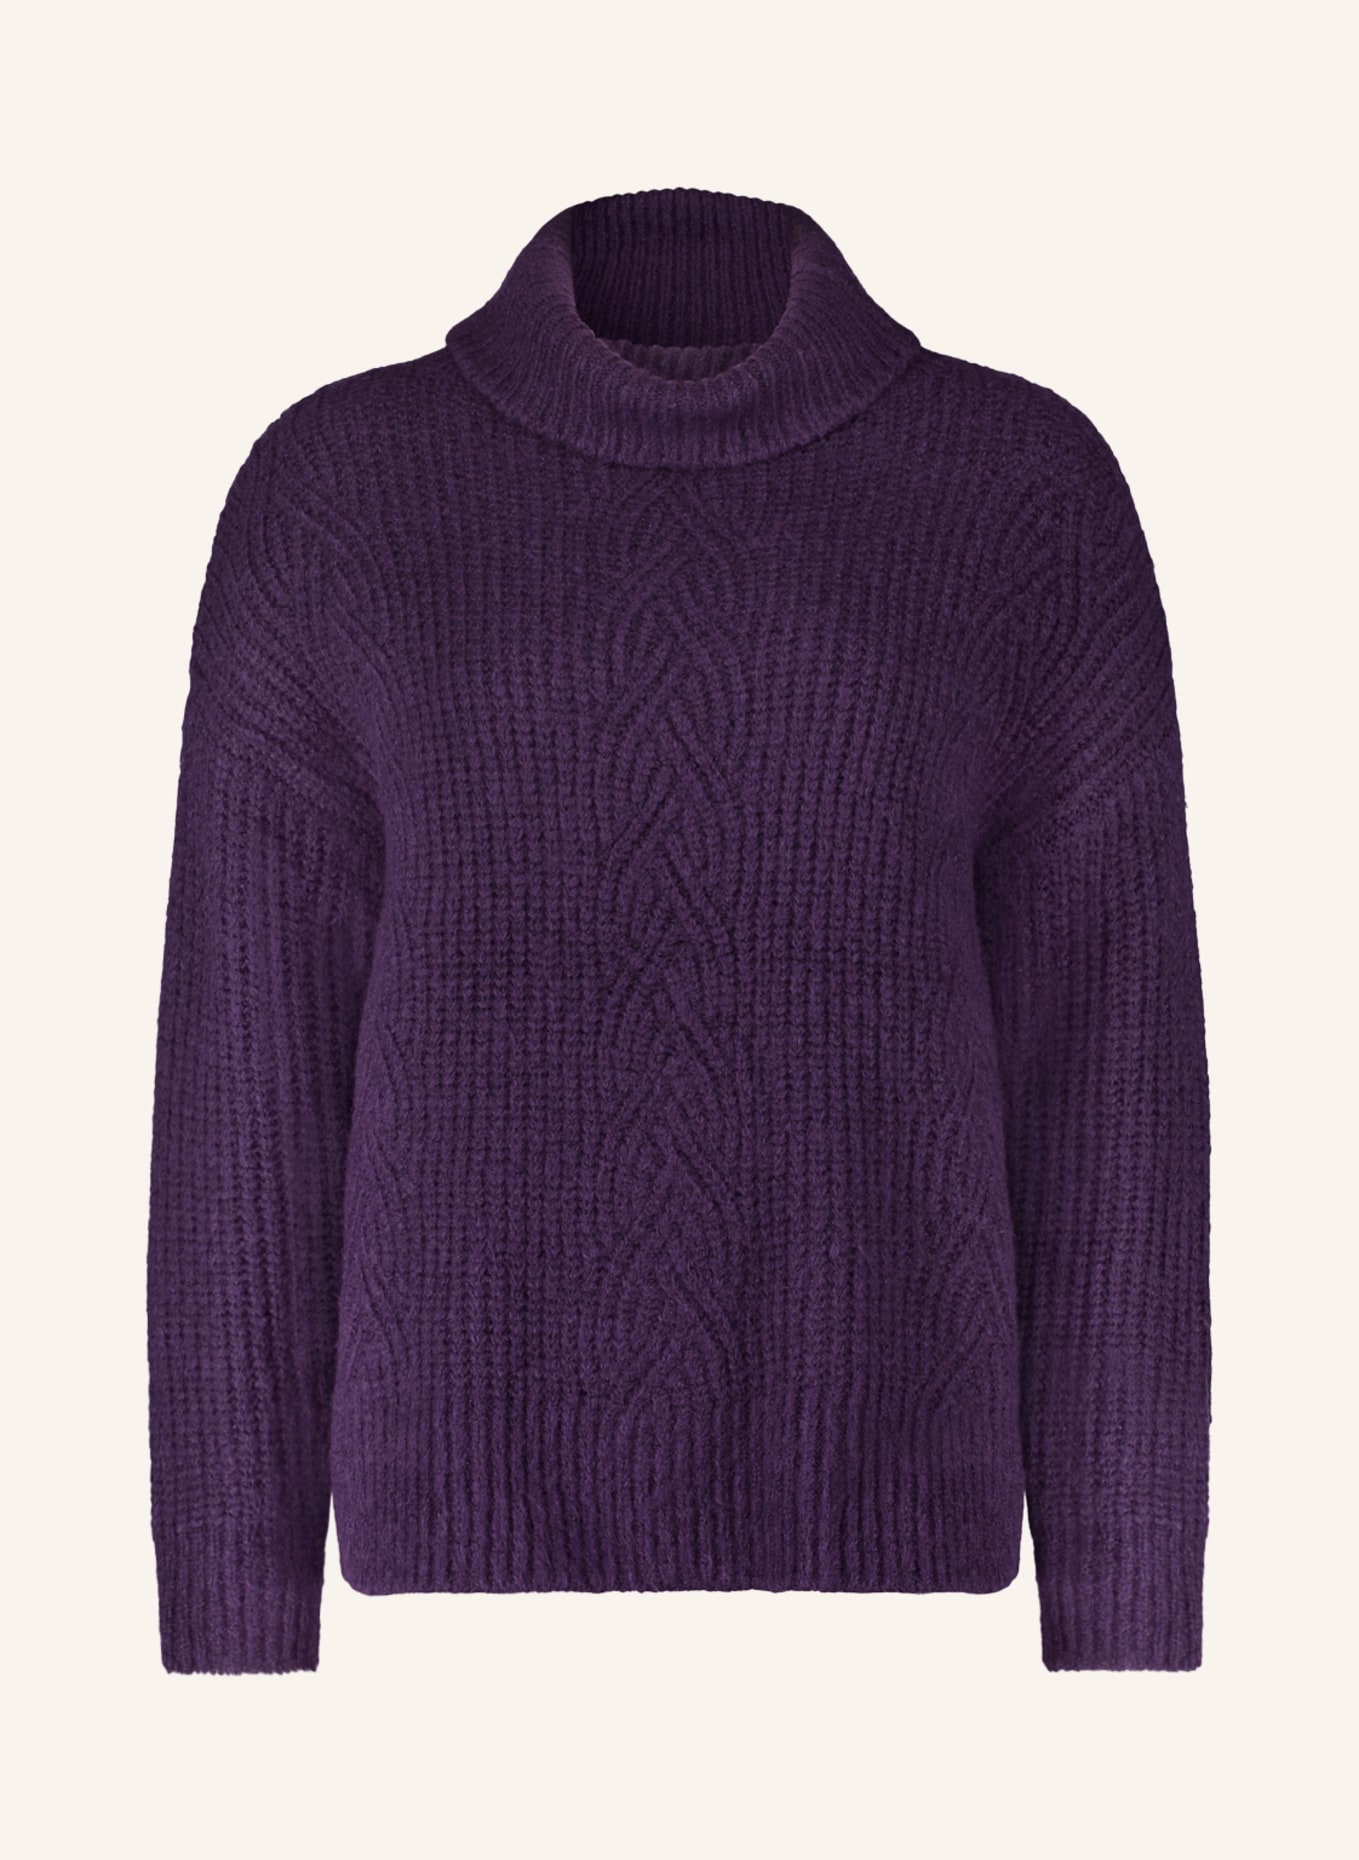 CARTOON Turtleneck sweater, Color: DARK PURPLE (Image 1)